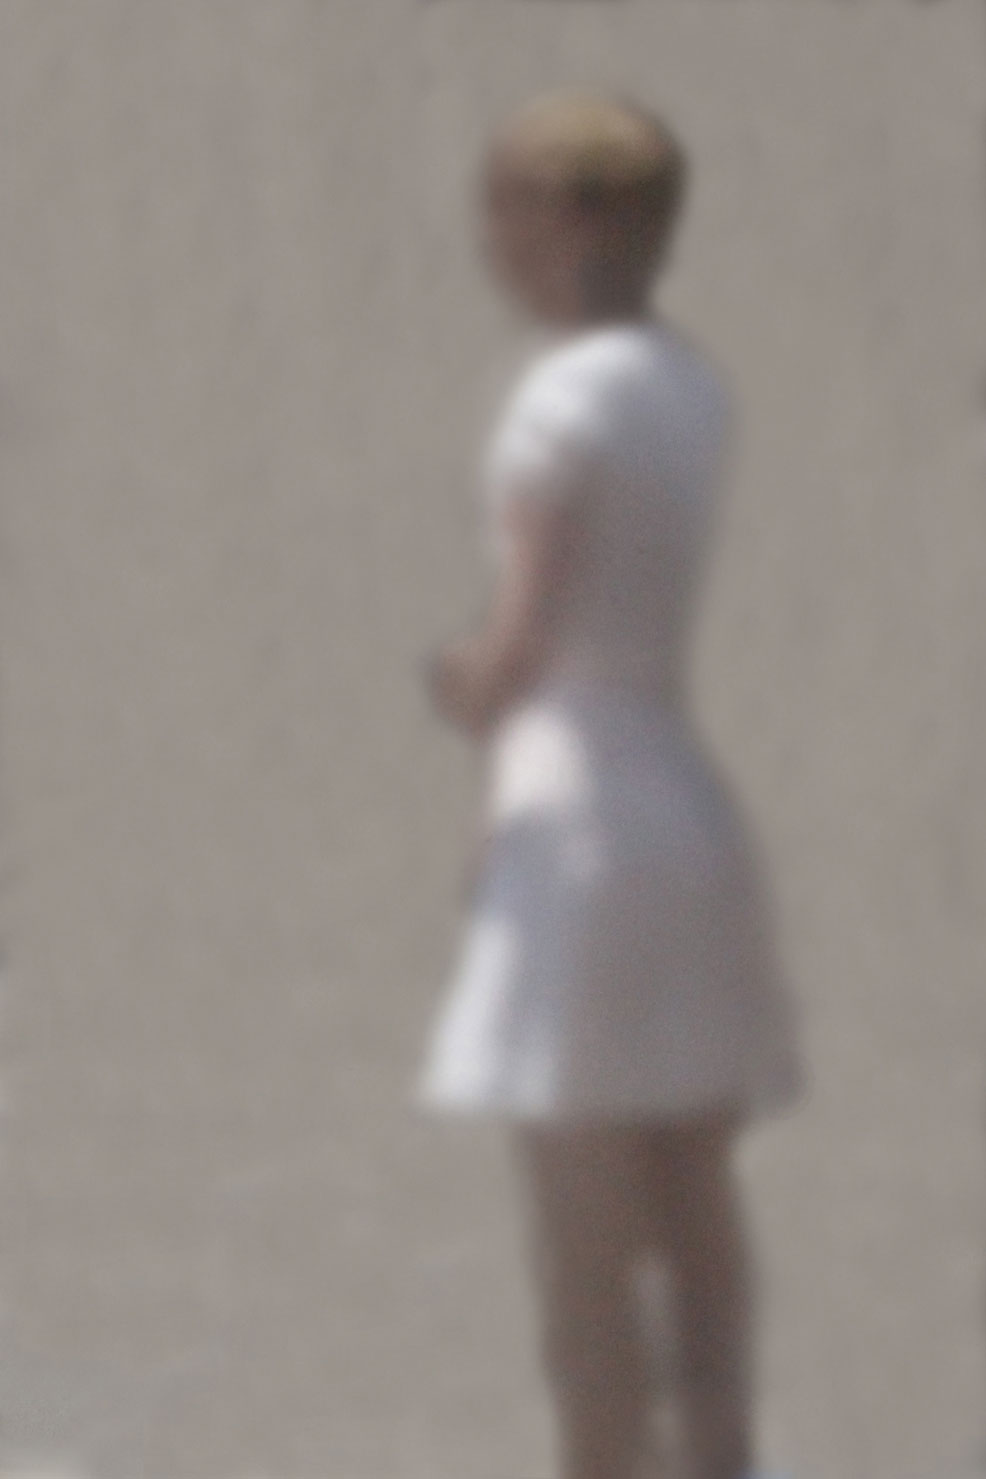 36 „Eine kleine Dame ganz in Weiß“, 2012, New York, Camera Obscura, Pigmentdruck auf Alu-Dibond